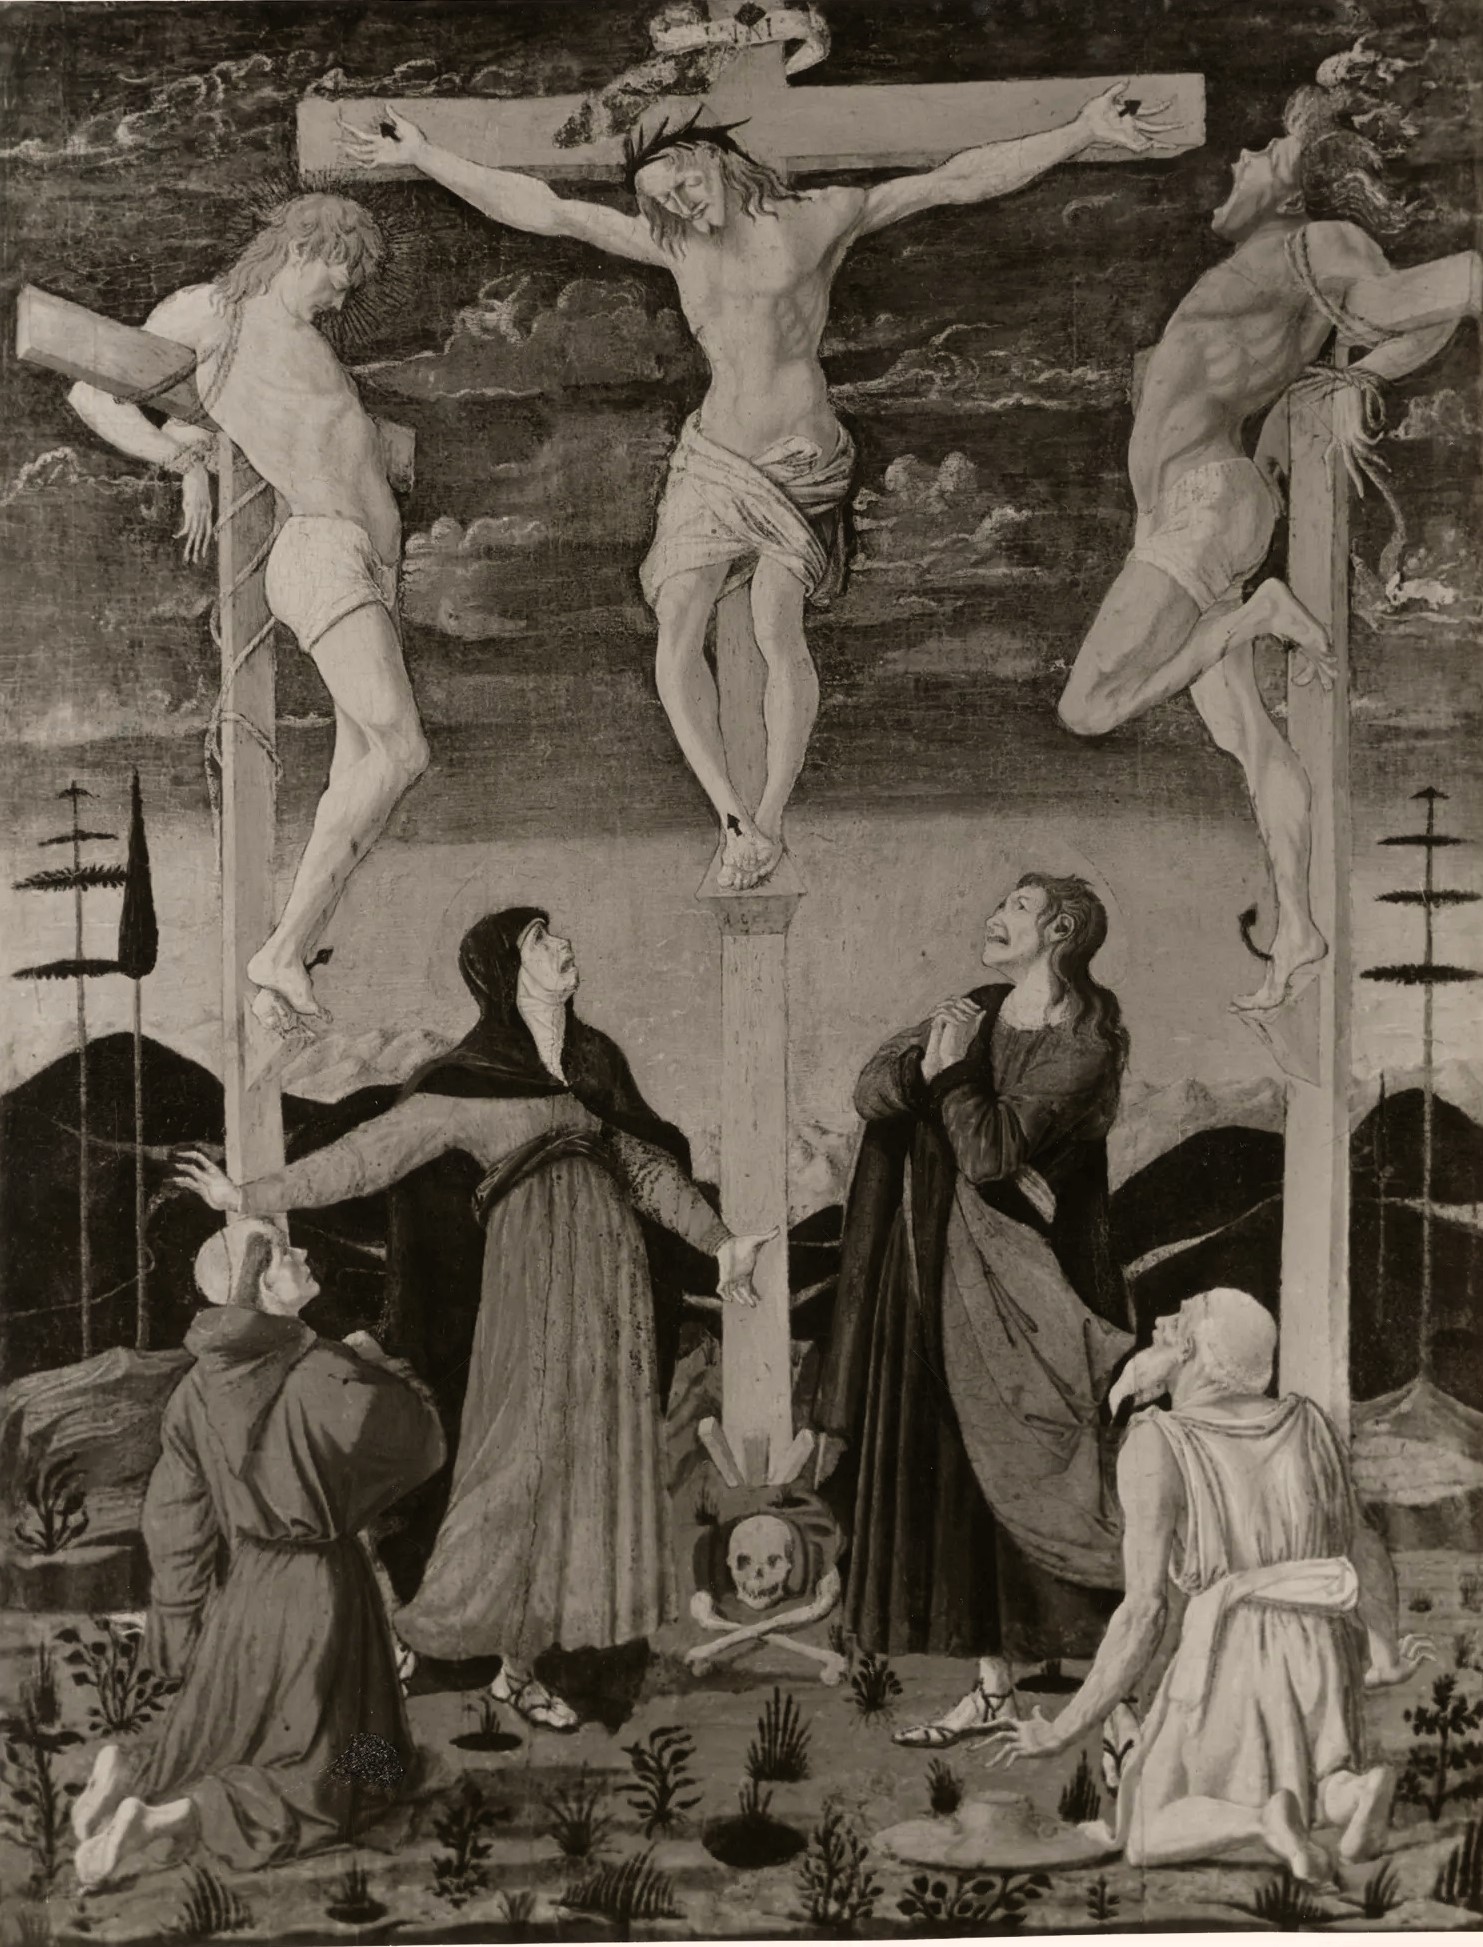 1455 ca Antonio del Pollaiolo, Crocifissione avec les saints Francesco et Gerolamo localisation inconnue detail